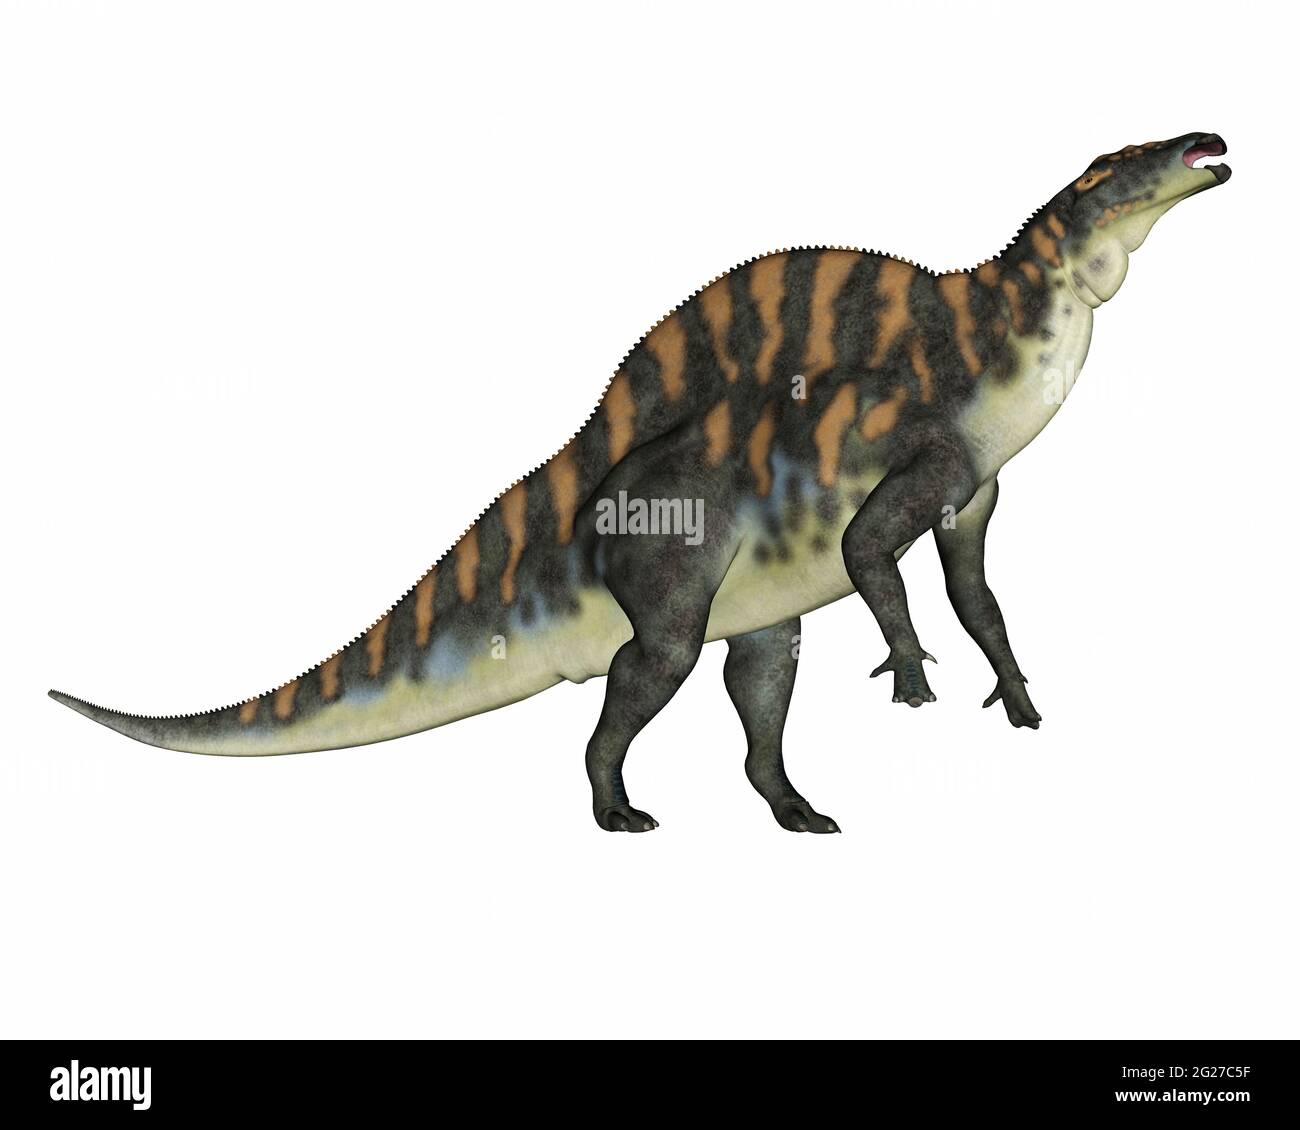 Ouranosaurus Dinosaurier aufziehen, isoliert auf weißem Hintergrund. Stockfoto